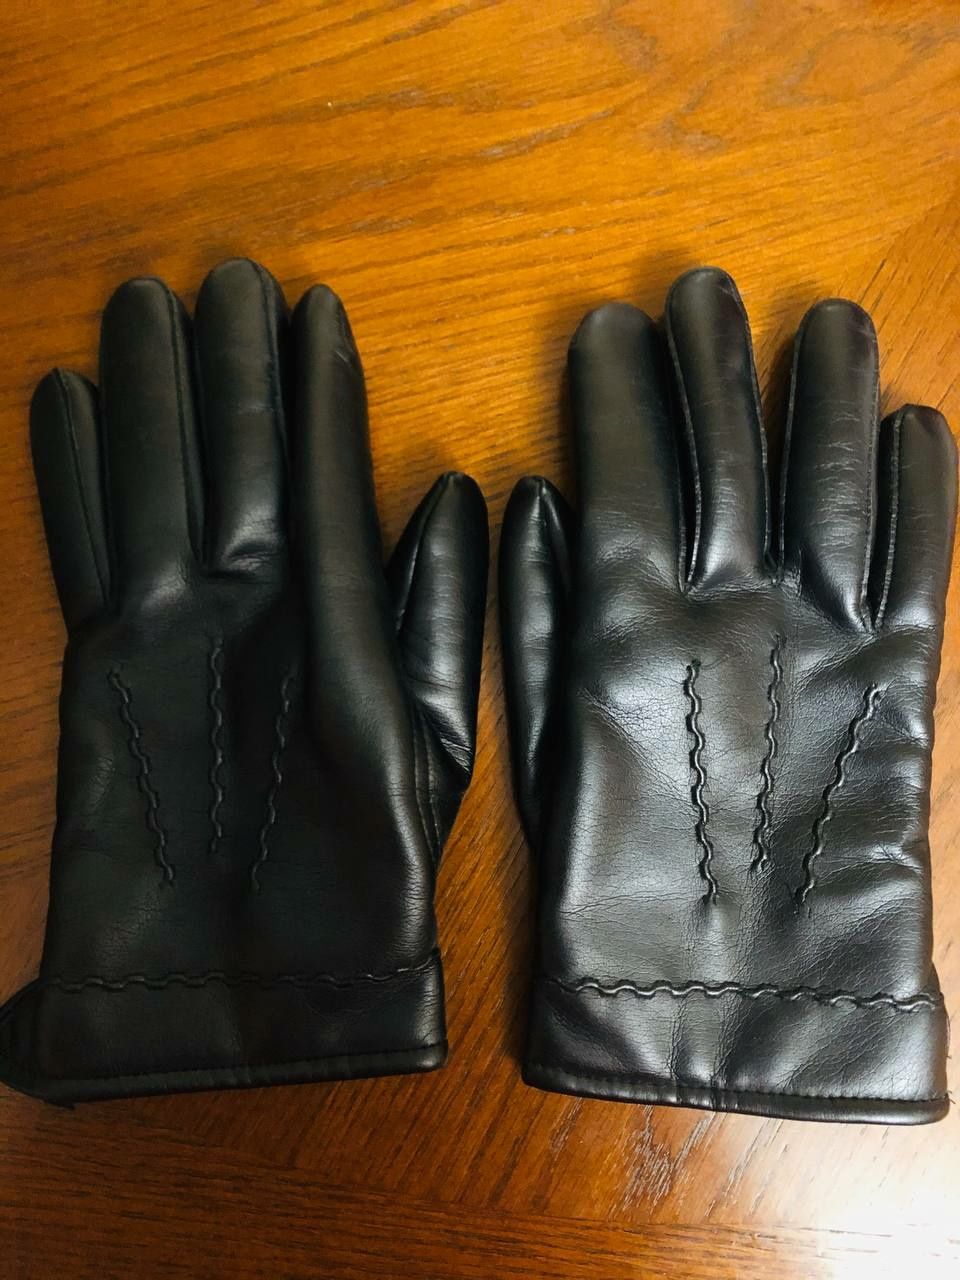 Продам перчатки жіночі

24 довжина
11 ширина 
Шкіра
Відішлю новою пошт